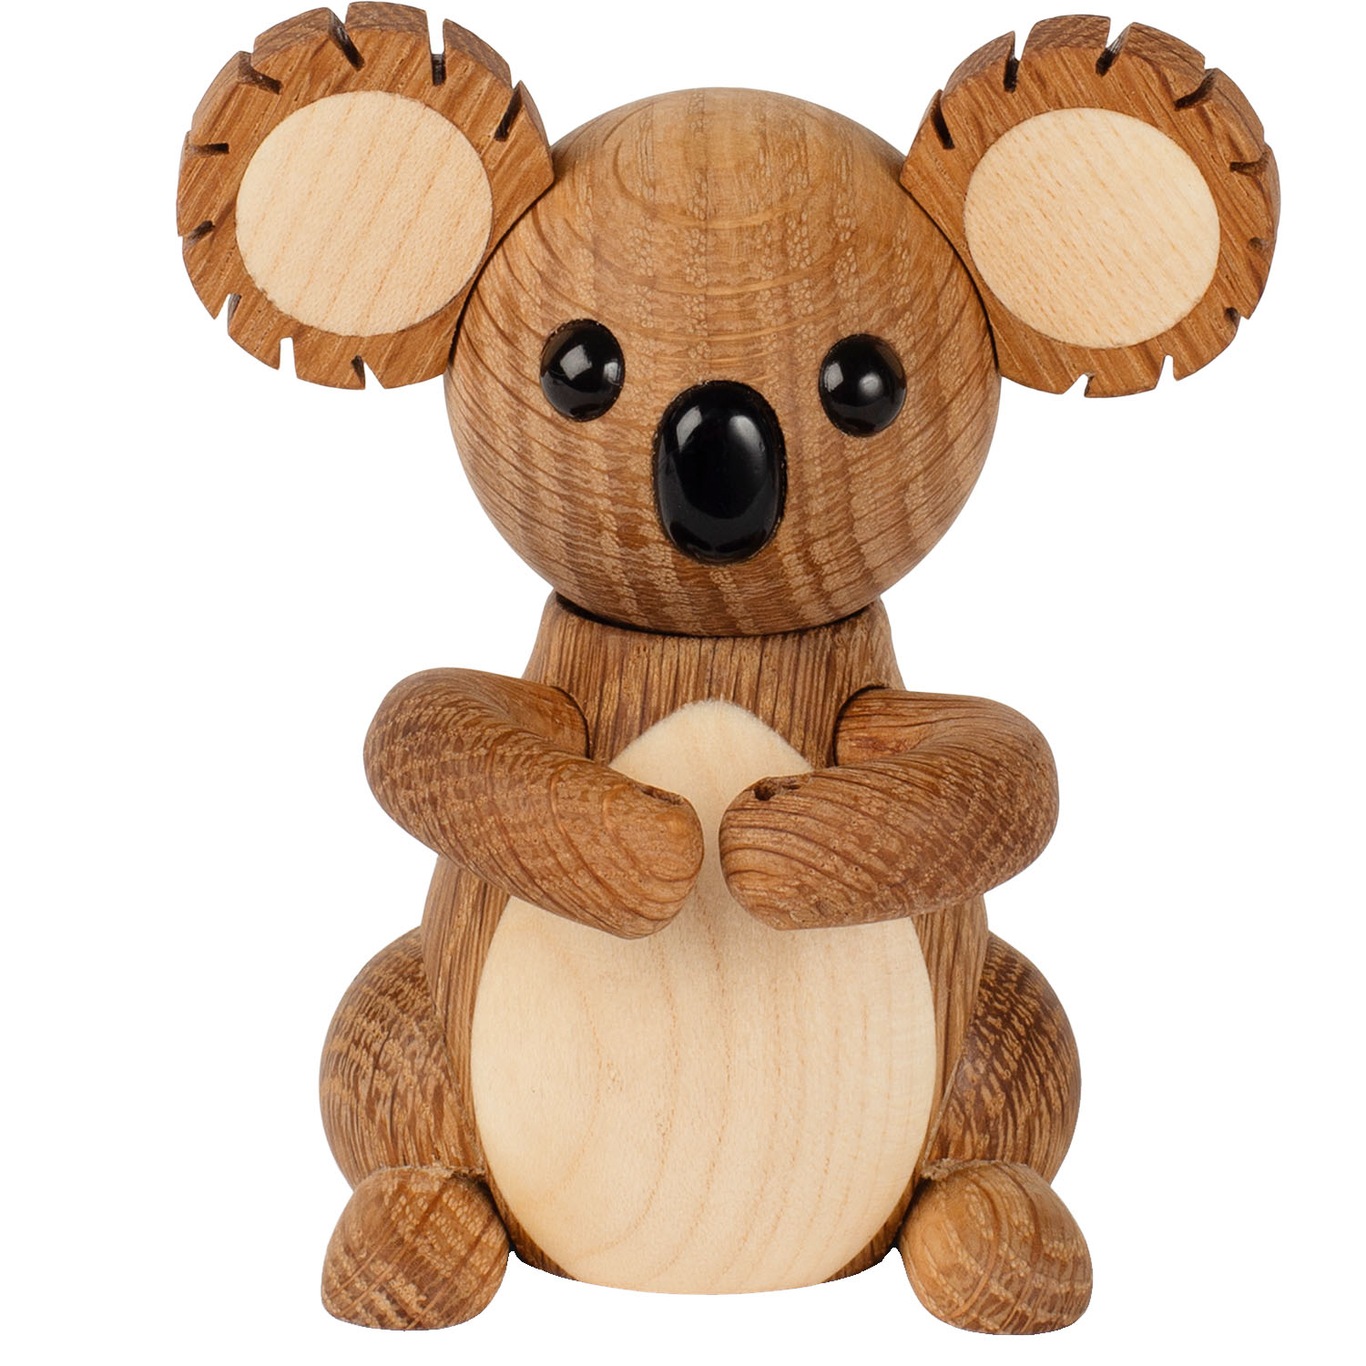 Matilda Koala Wooden Figurine 7.5 cm